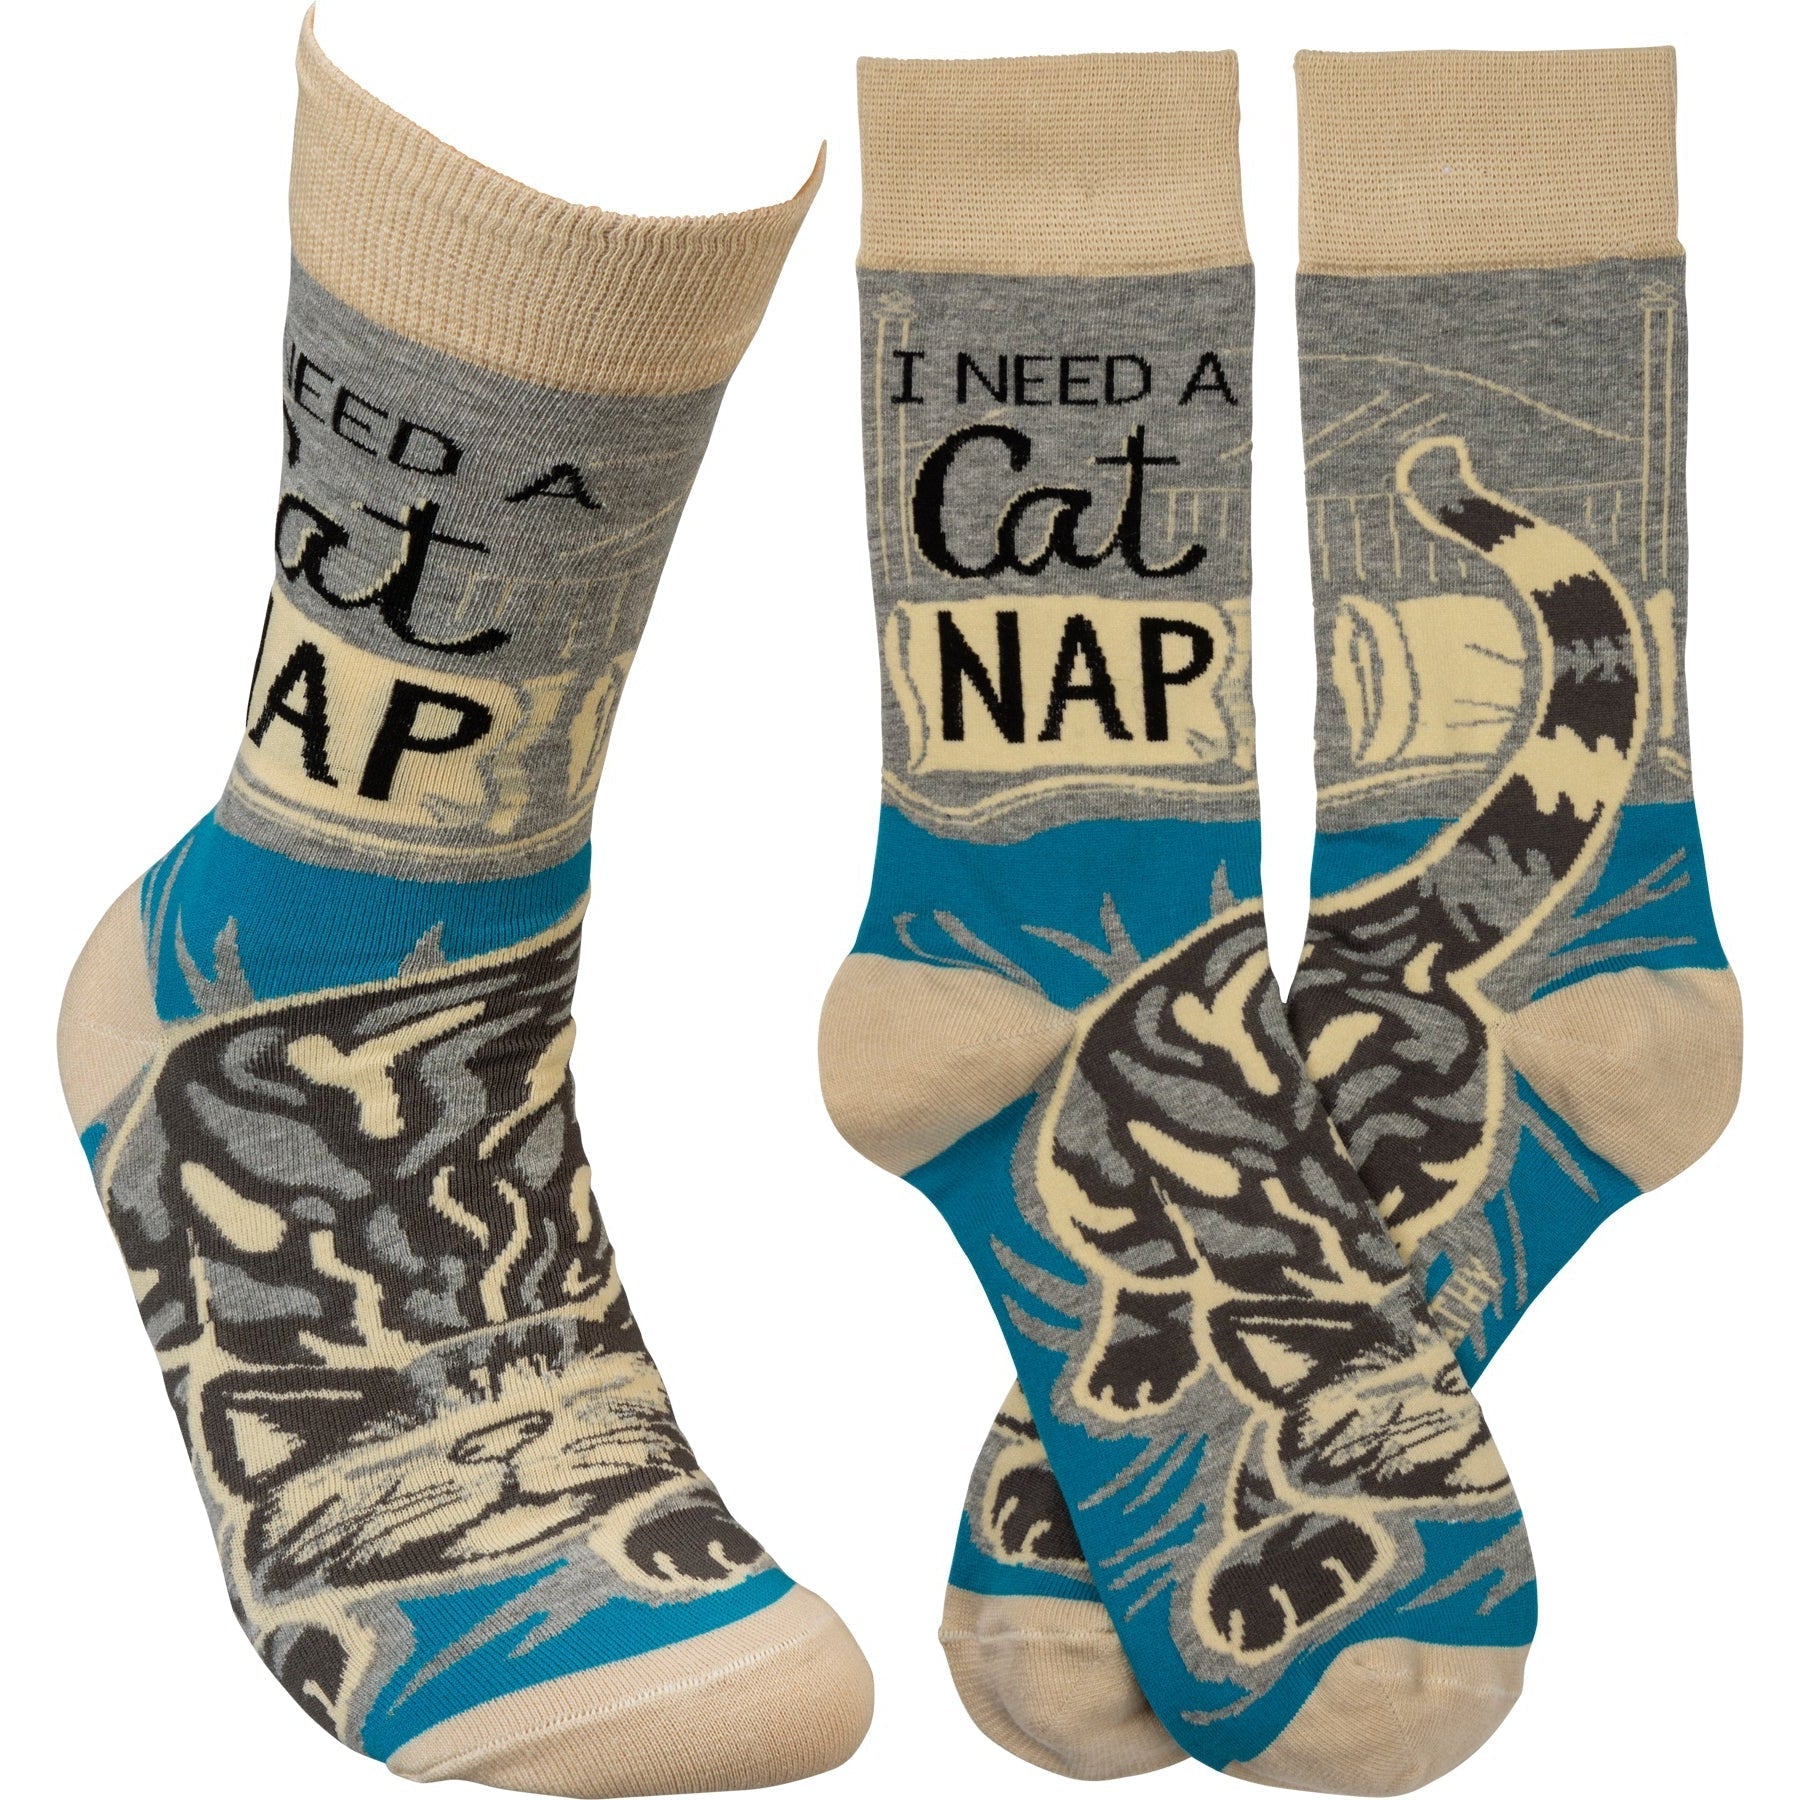 I Need A Cat Nap Crew Funny Novelty Socks